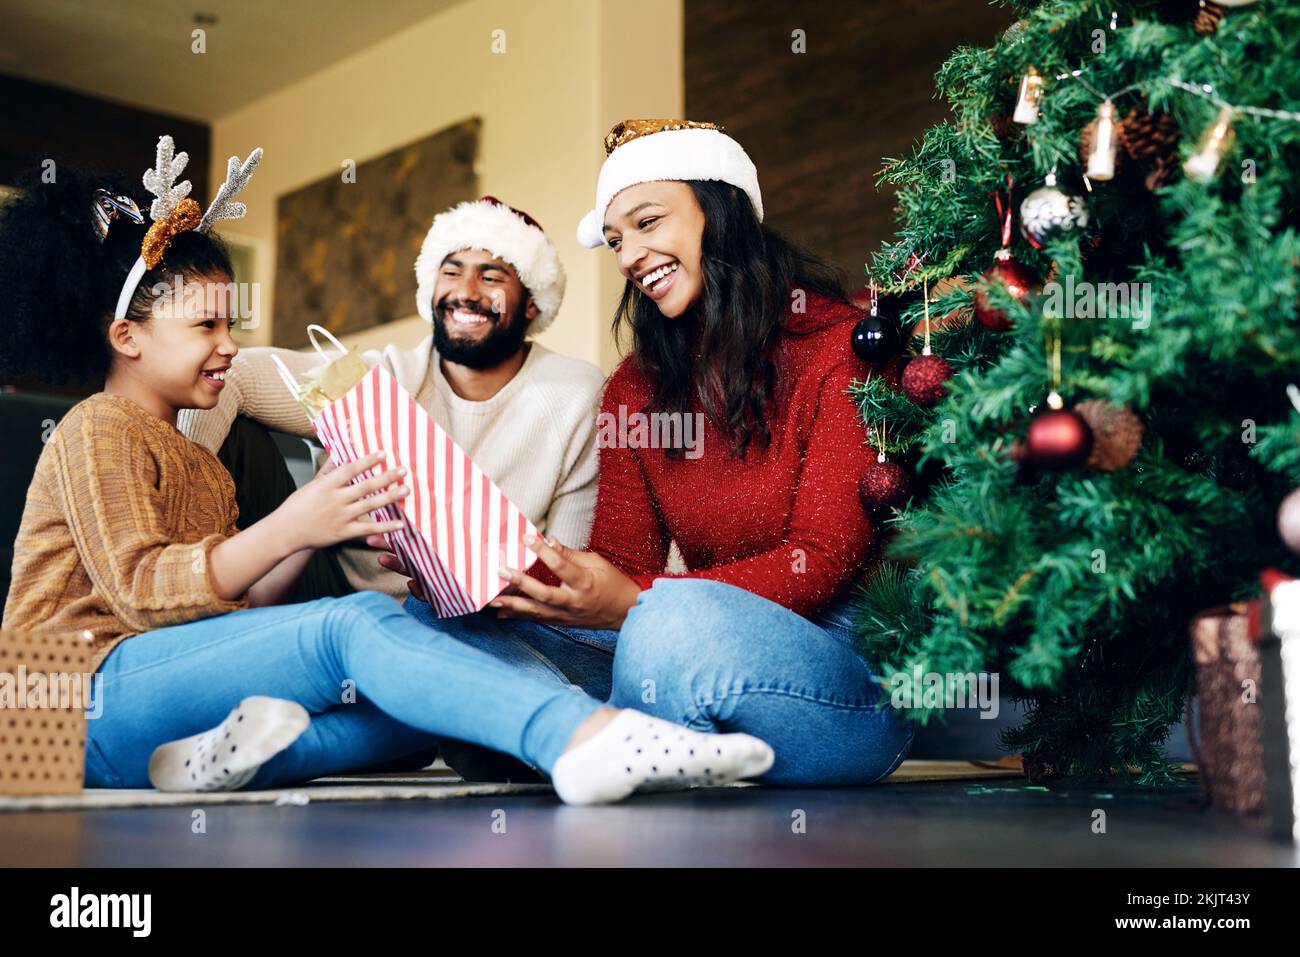 Familie, weihnachtsfeier und Geschenke, glückliches Lächeln und Liebe auf dem Boden zu Hause, Festtag und Überraschung, Mädchen, Mutter und Vater feiern Stockfoto